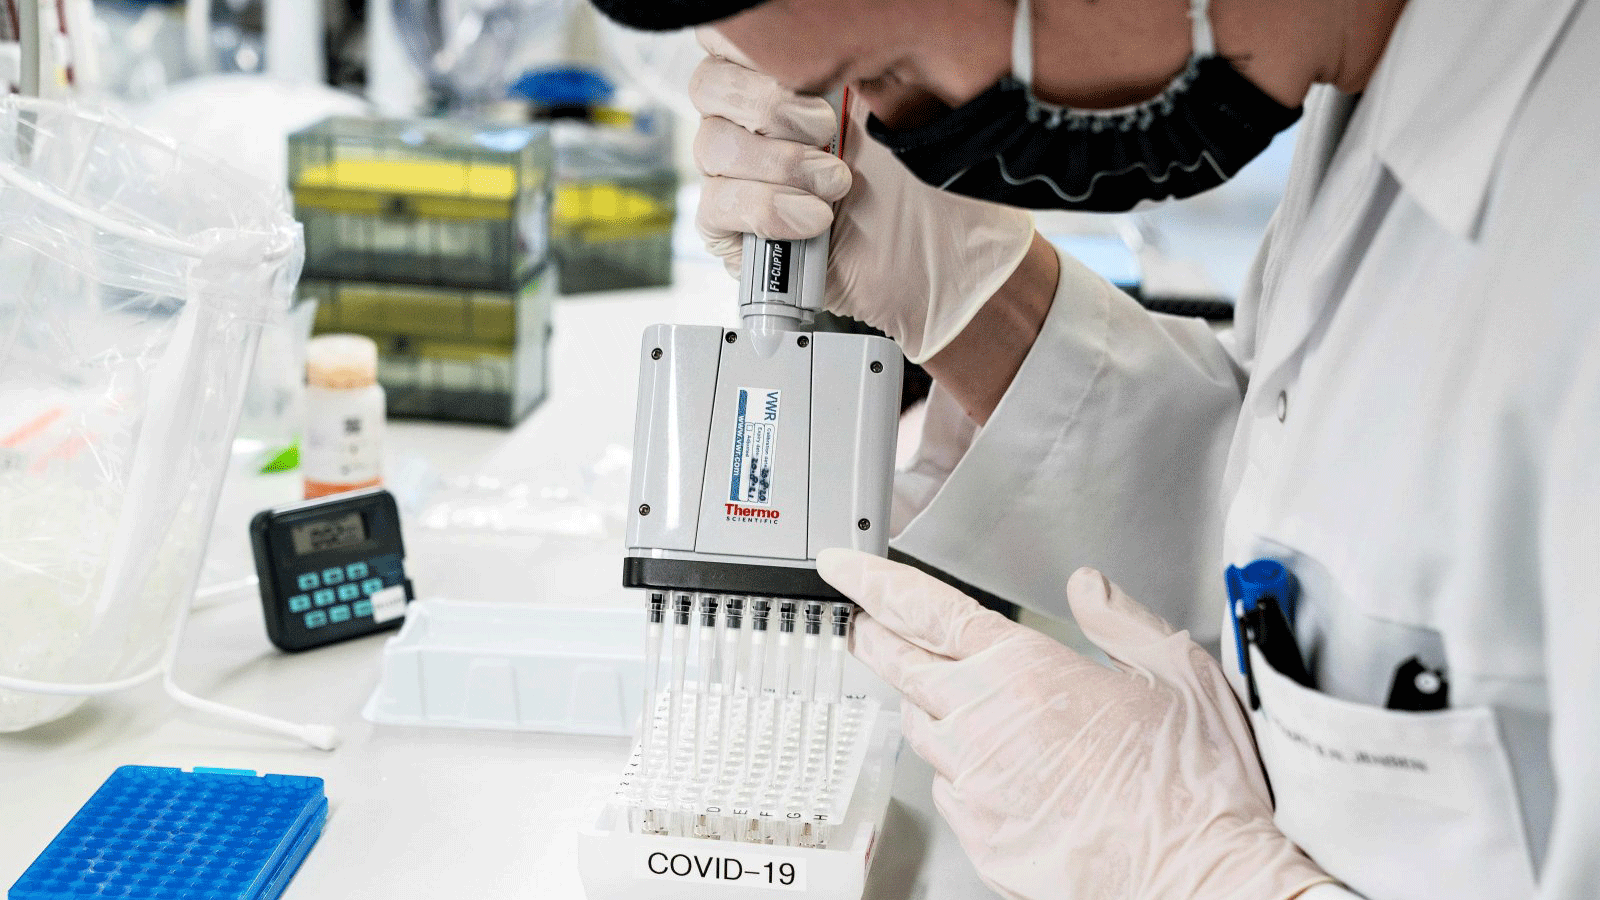 يقوم الباحثون في جامعة ألبورج بفحص وتحليل عينات فيروس كورونا الإيجابية لمجموعة متغير الفيروس B117 من المملكة المتحدة، في ألبورج، الدنمارك. 15 كانون الثاني/ يناير 2021